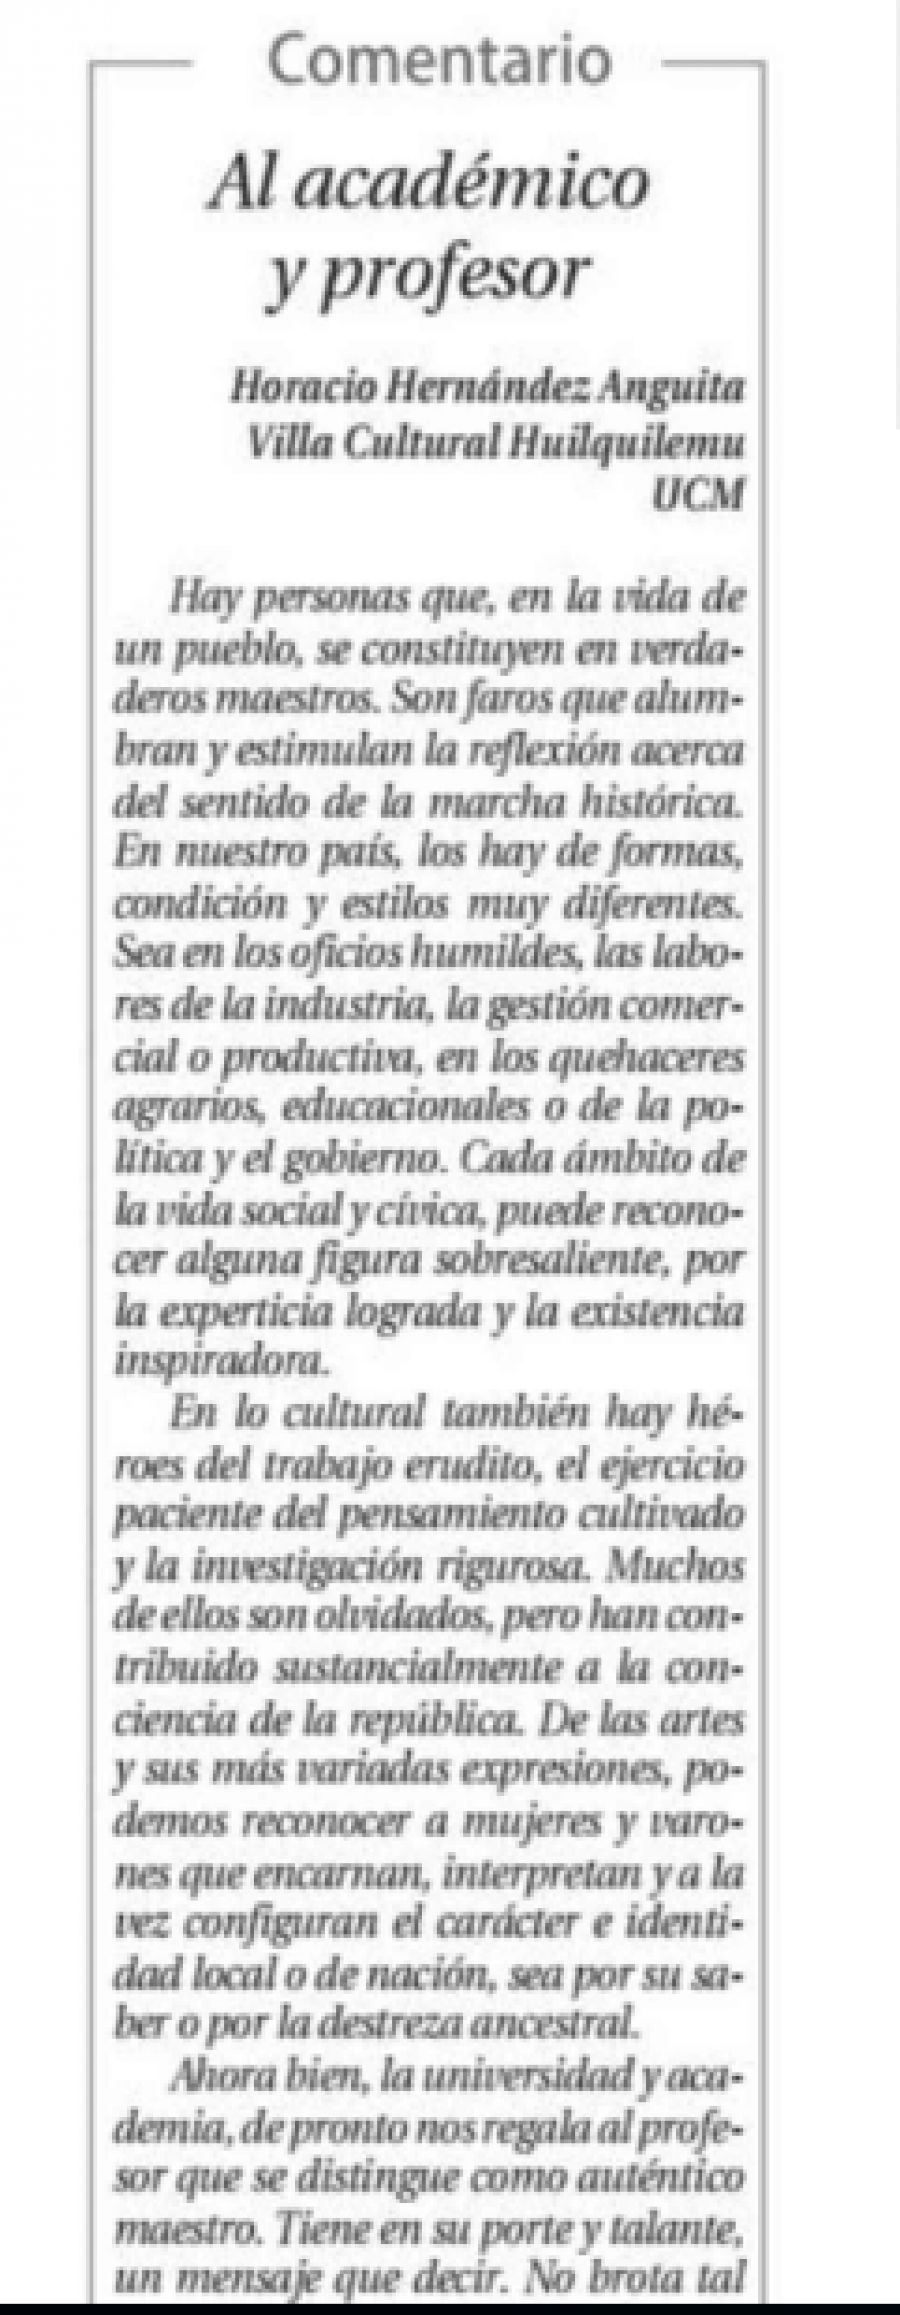 03 de junio en Diario El Centro: “Al académico y profesor”